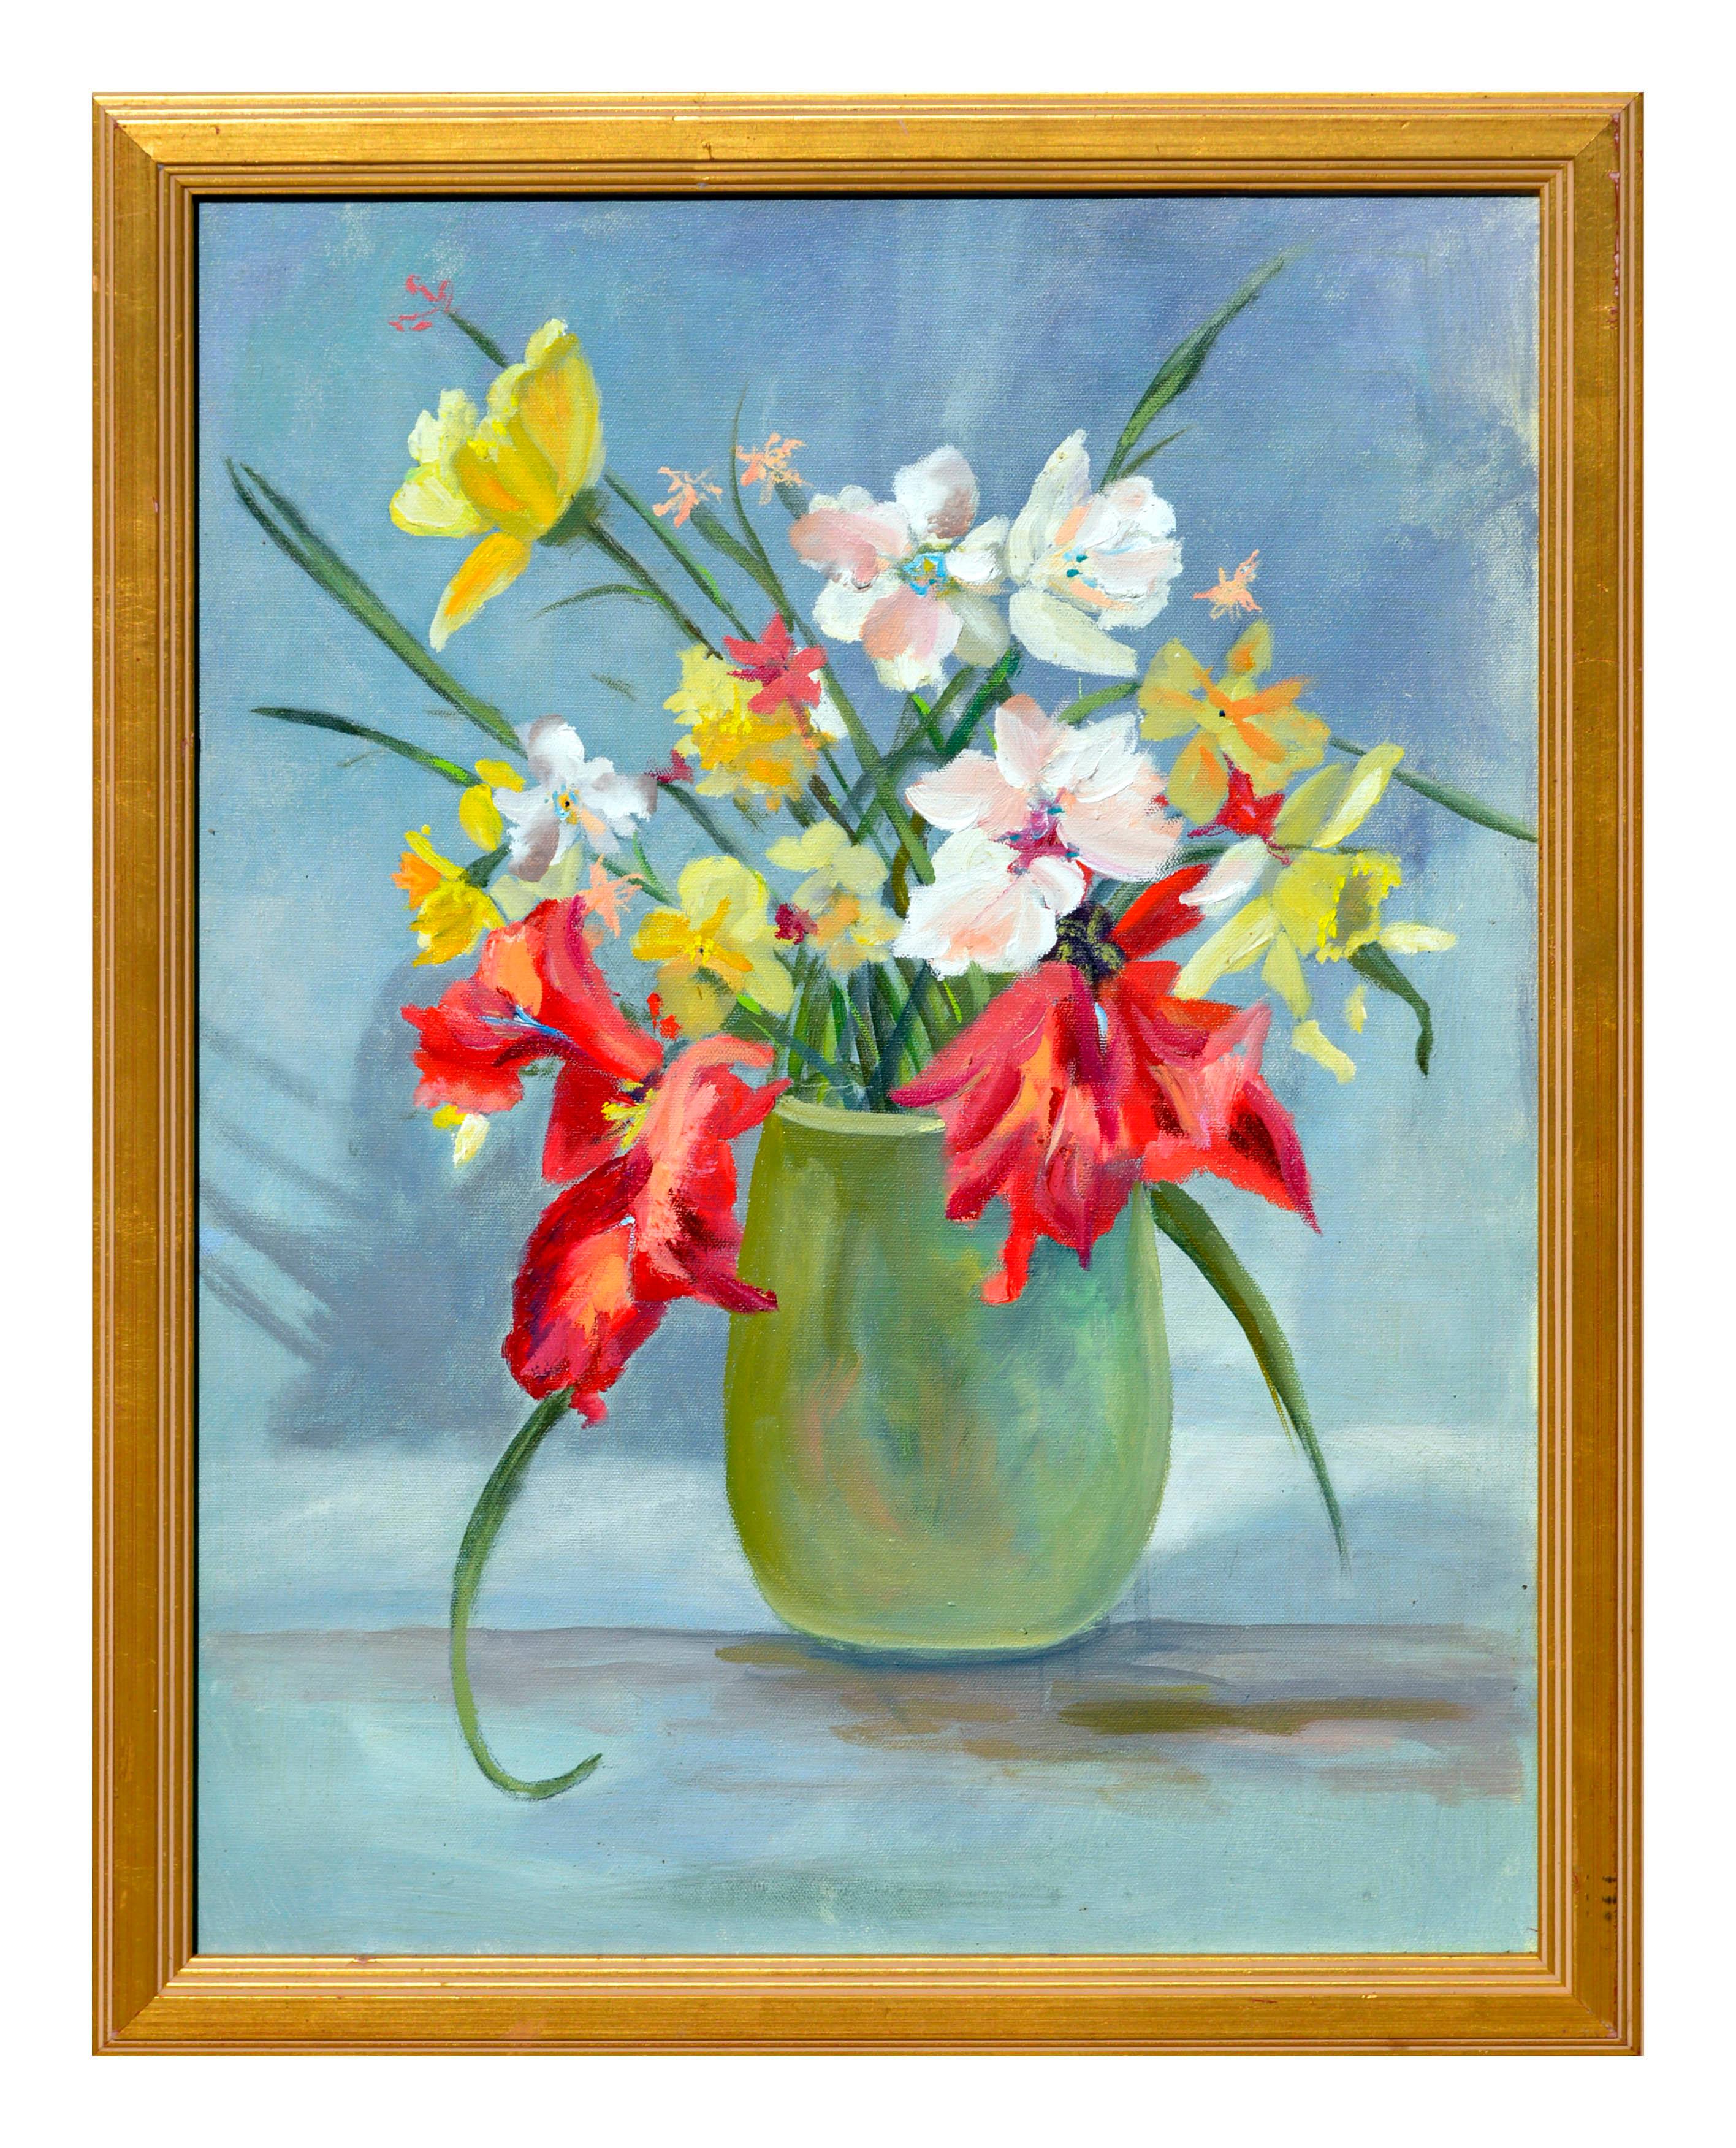 Unknown Still-Life Painting - Vibrant Spring Bulb Still Life